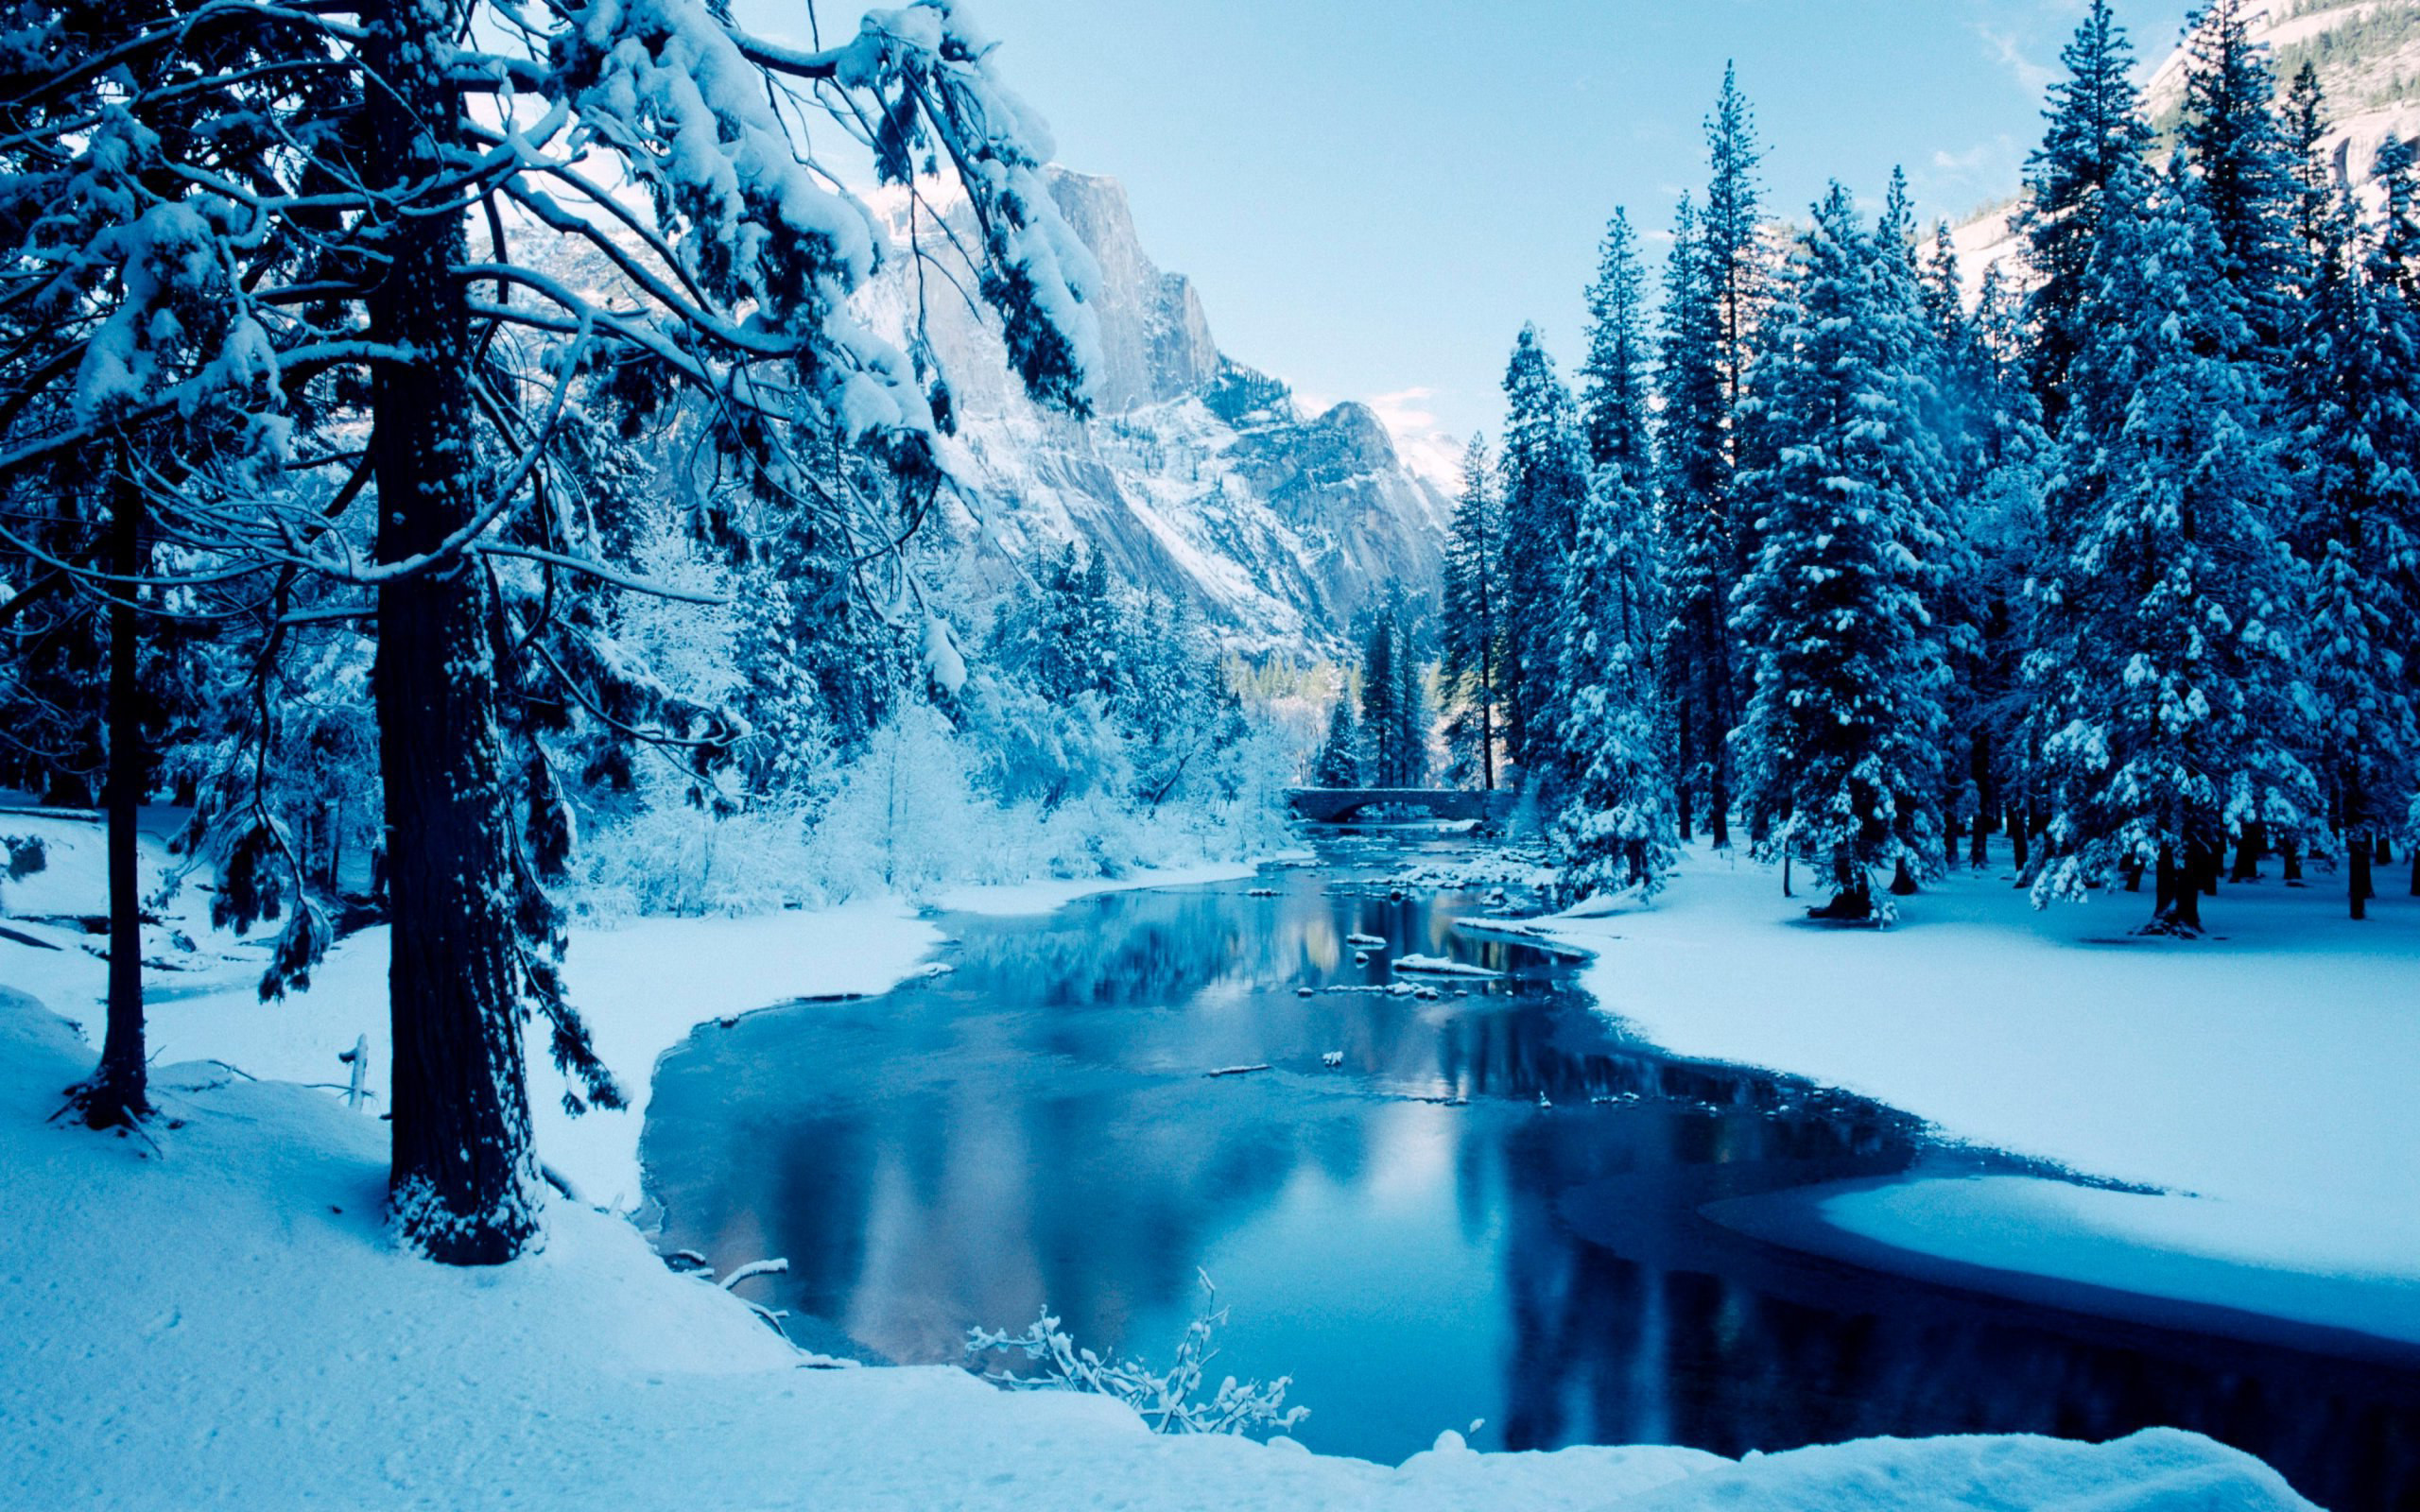 Wallpaper Desktop Winter Scenes 53 images 2560x1600